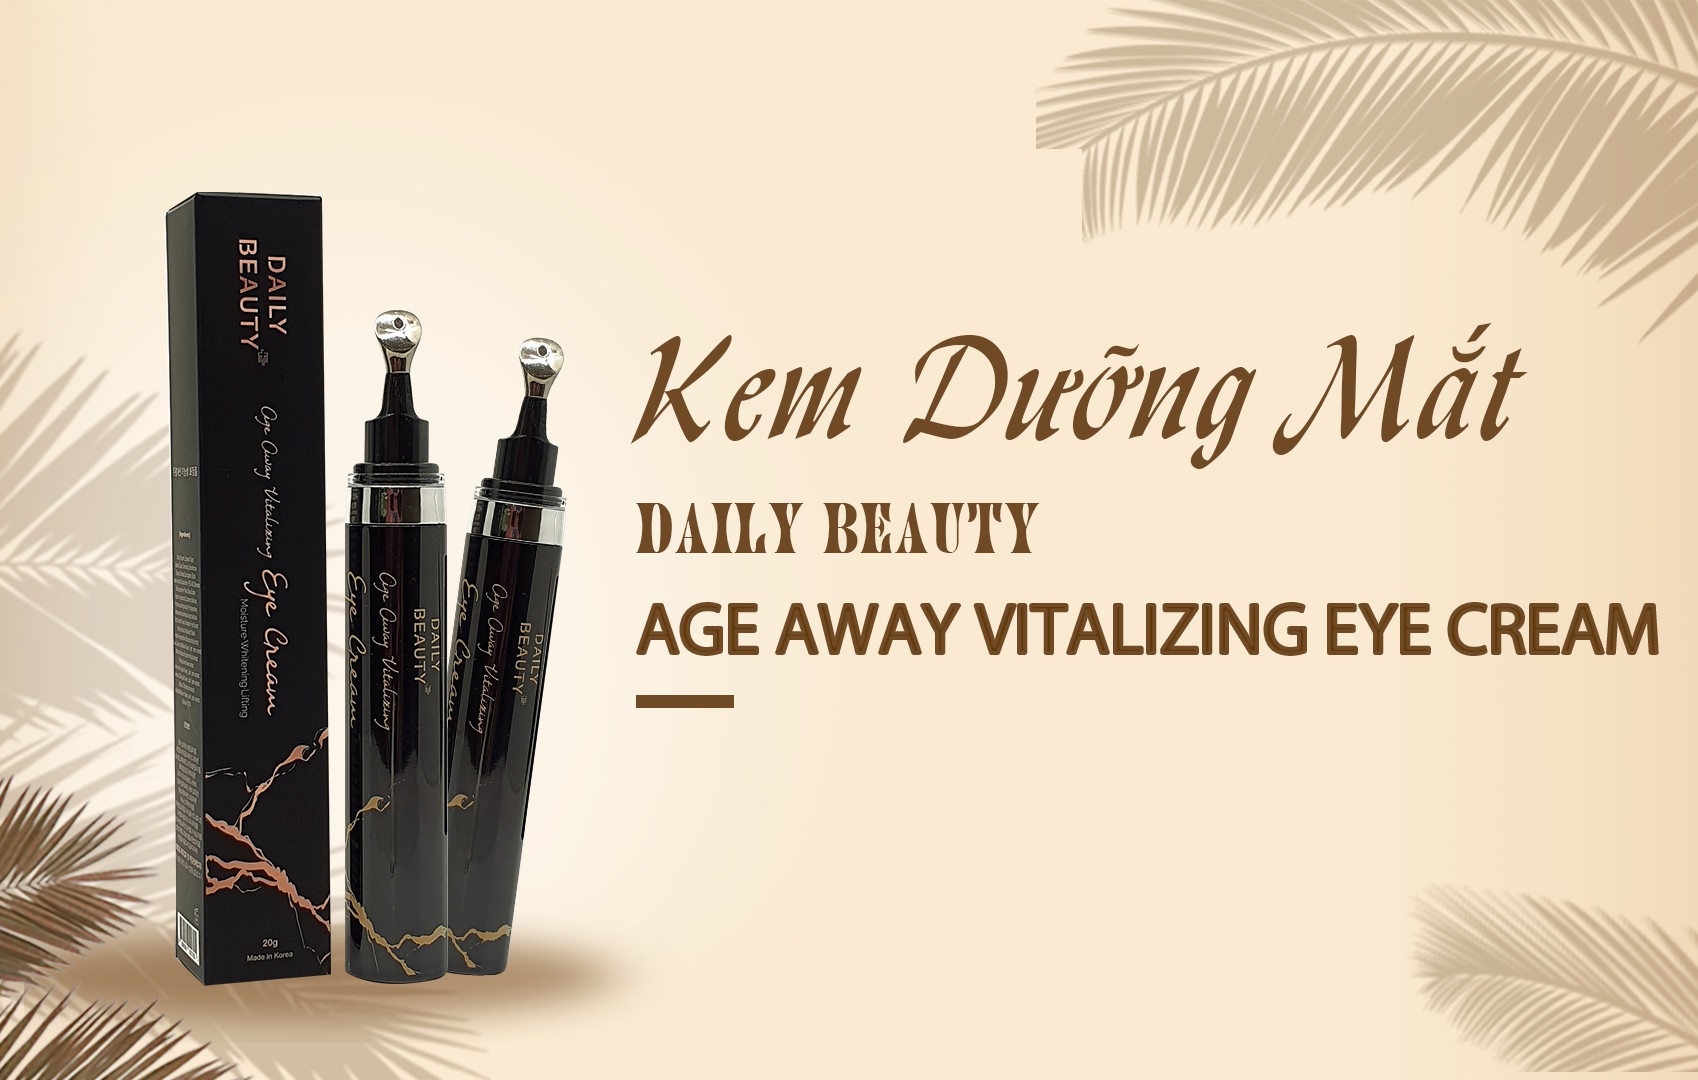 Kem dưỡng mắt Daily Beauty Age Away Vitalizing Eye Cream R&amp;B Việt Nam phân phối độc quyền sản phẩm nhập khẩu từ Hàn Quốc